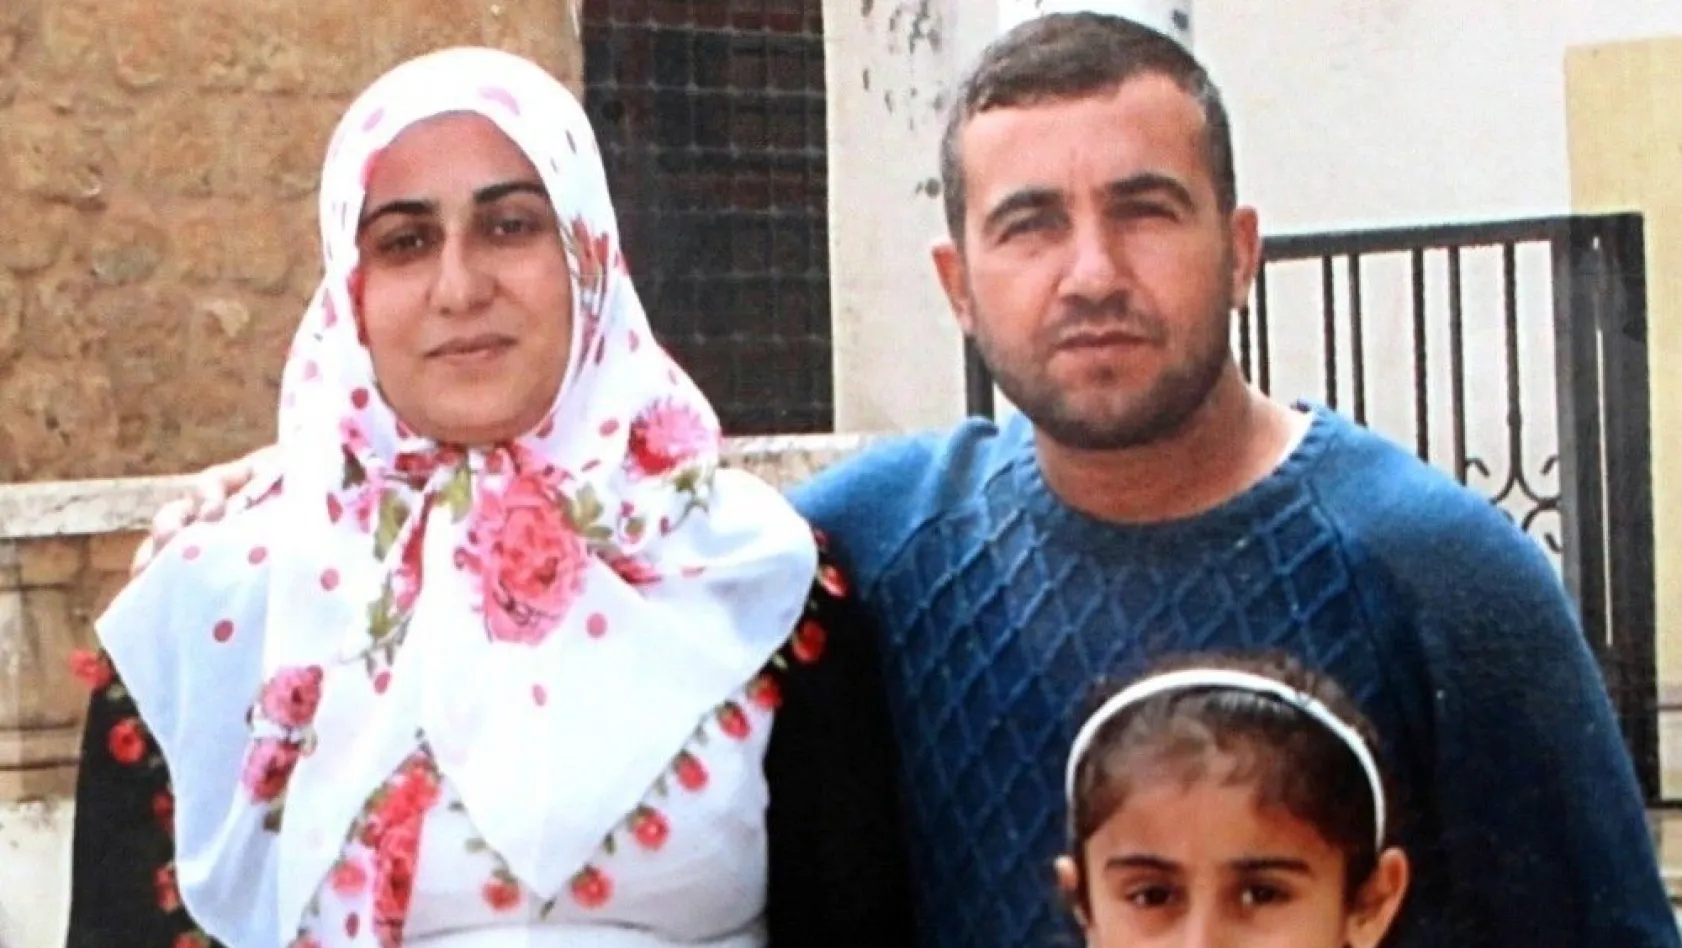 Diyarbakır'da 4 çocuk annesinin öldüğü hastaneye soruşturma
